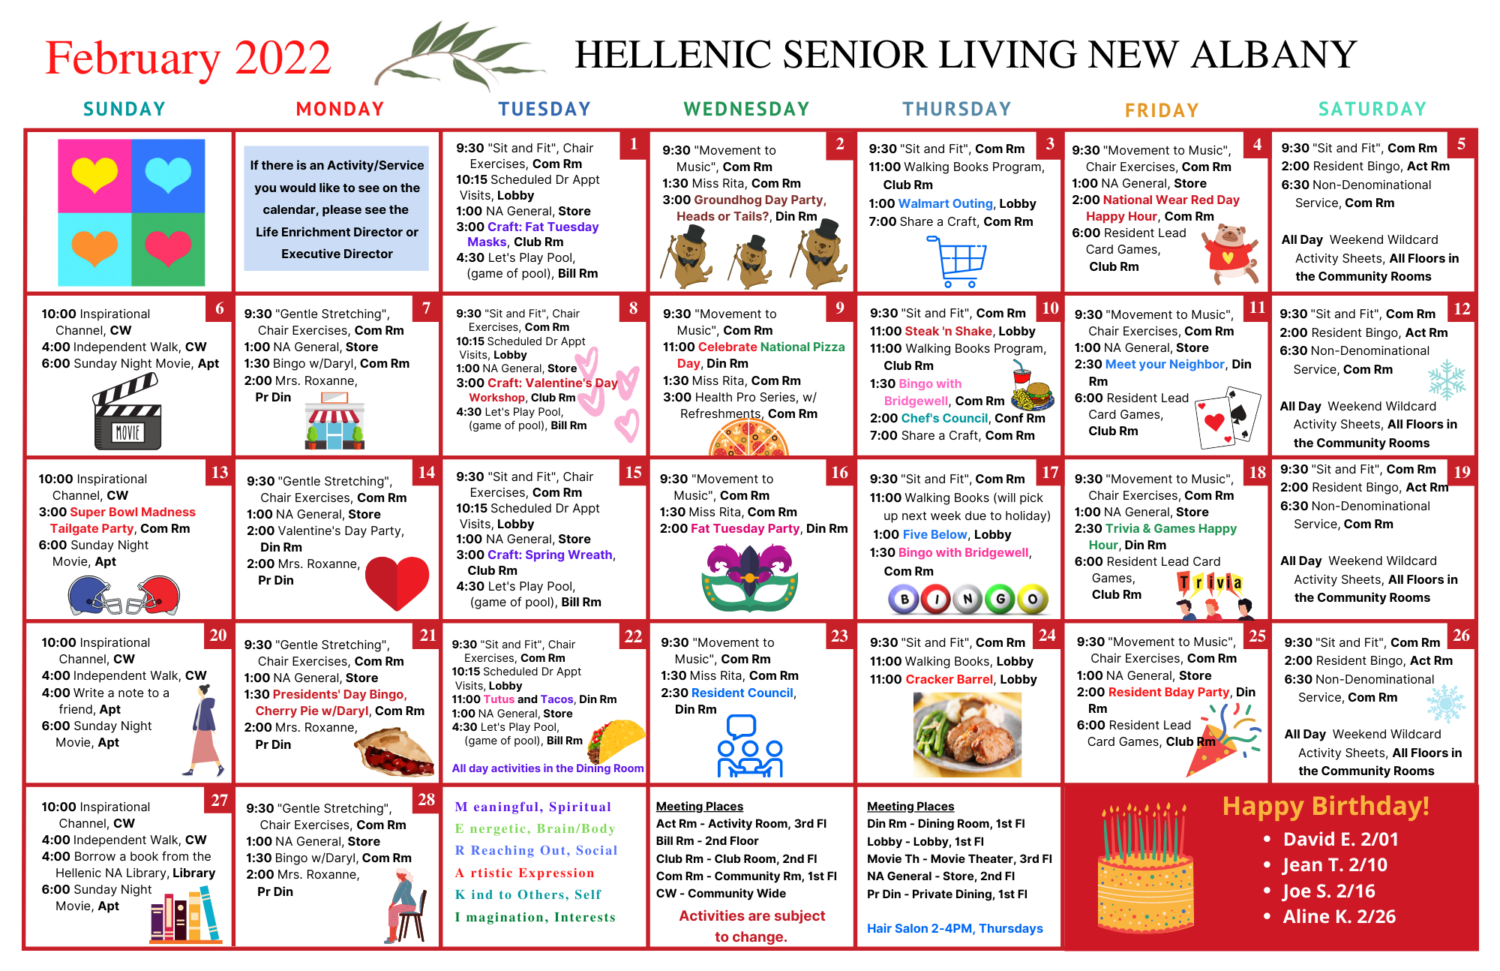 February Activity Calendar for Hellenic Senior Living of New Albany